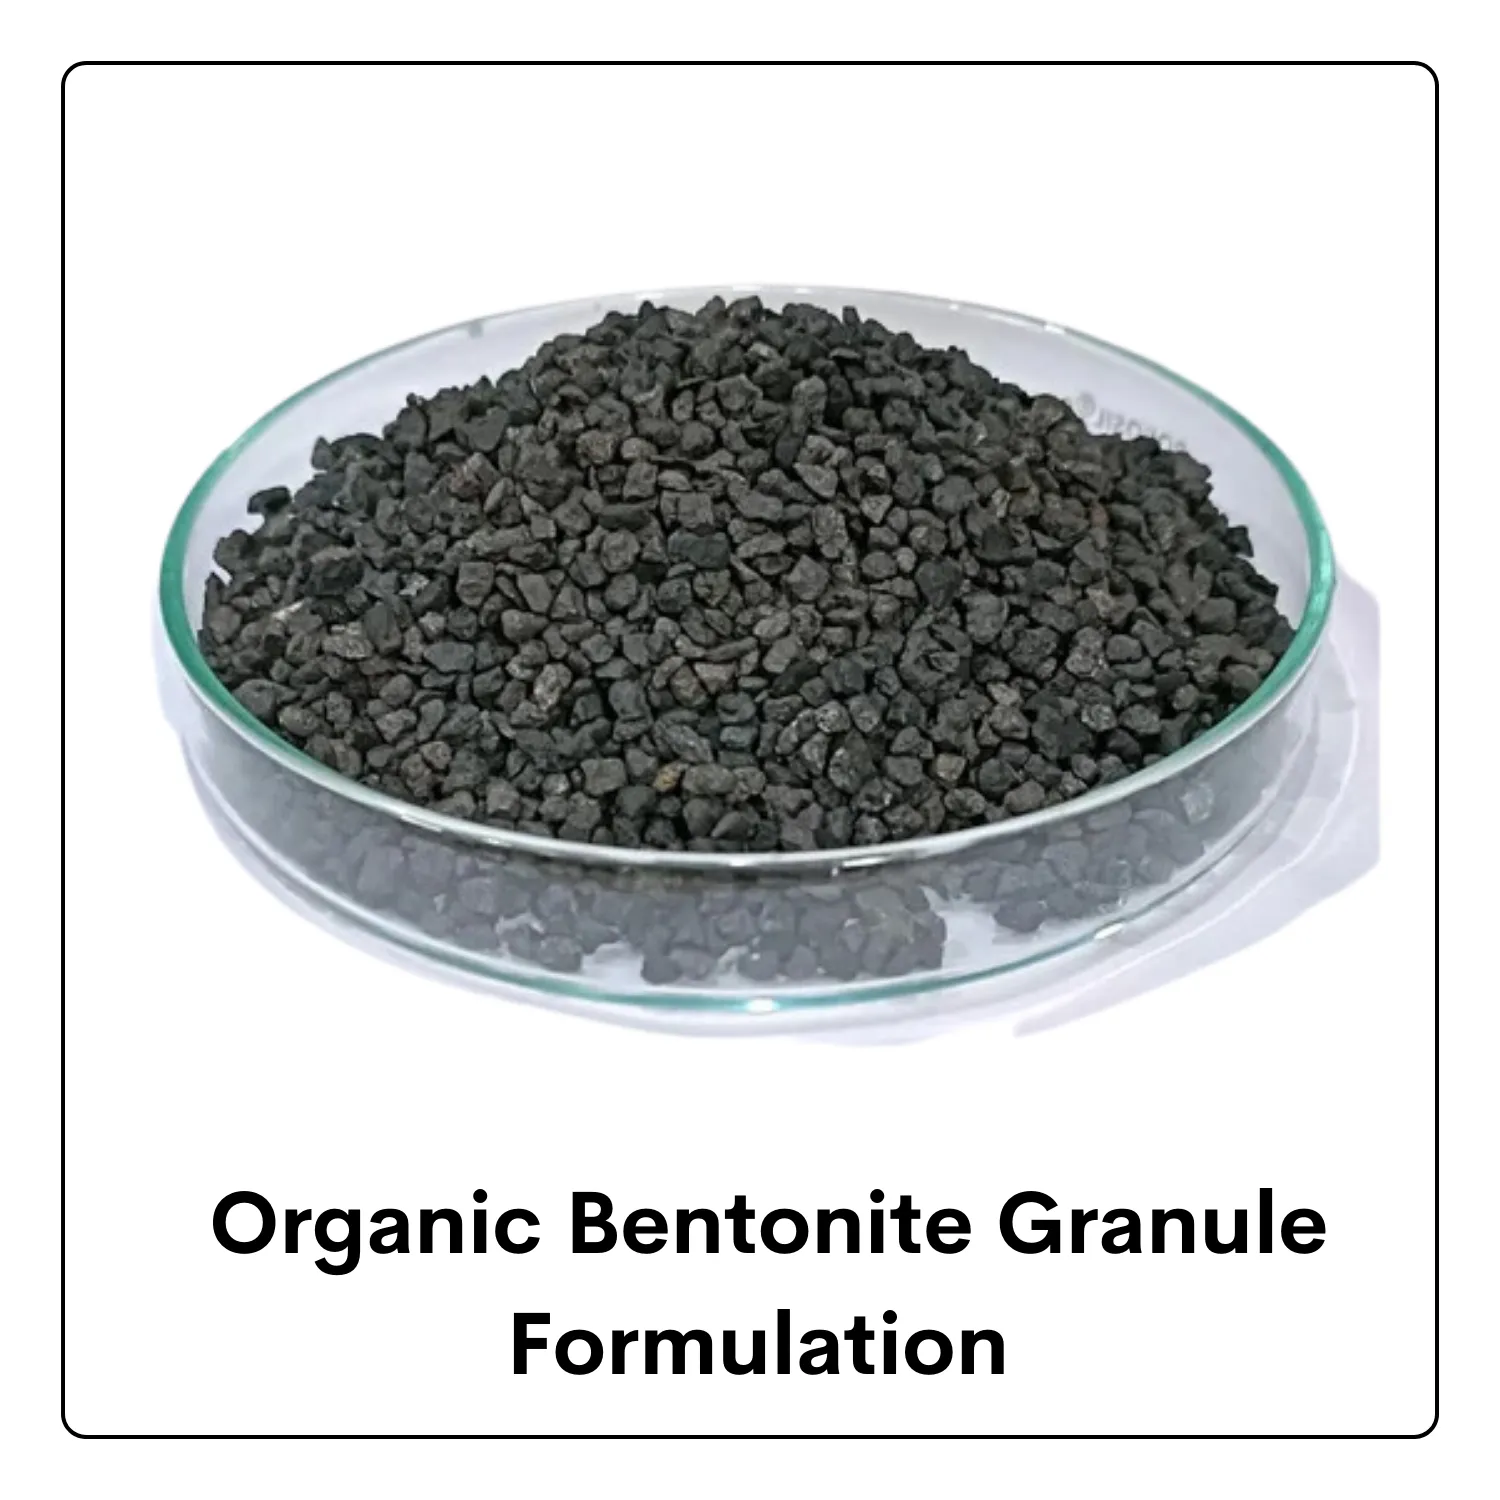 Organic Bentonite Granule